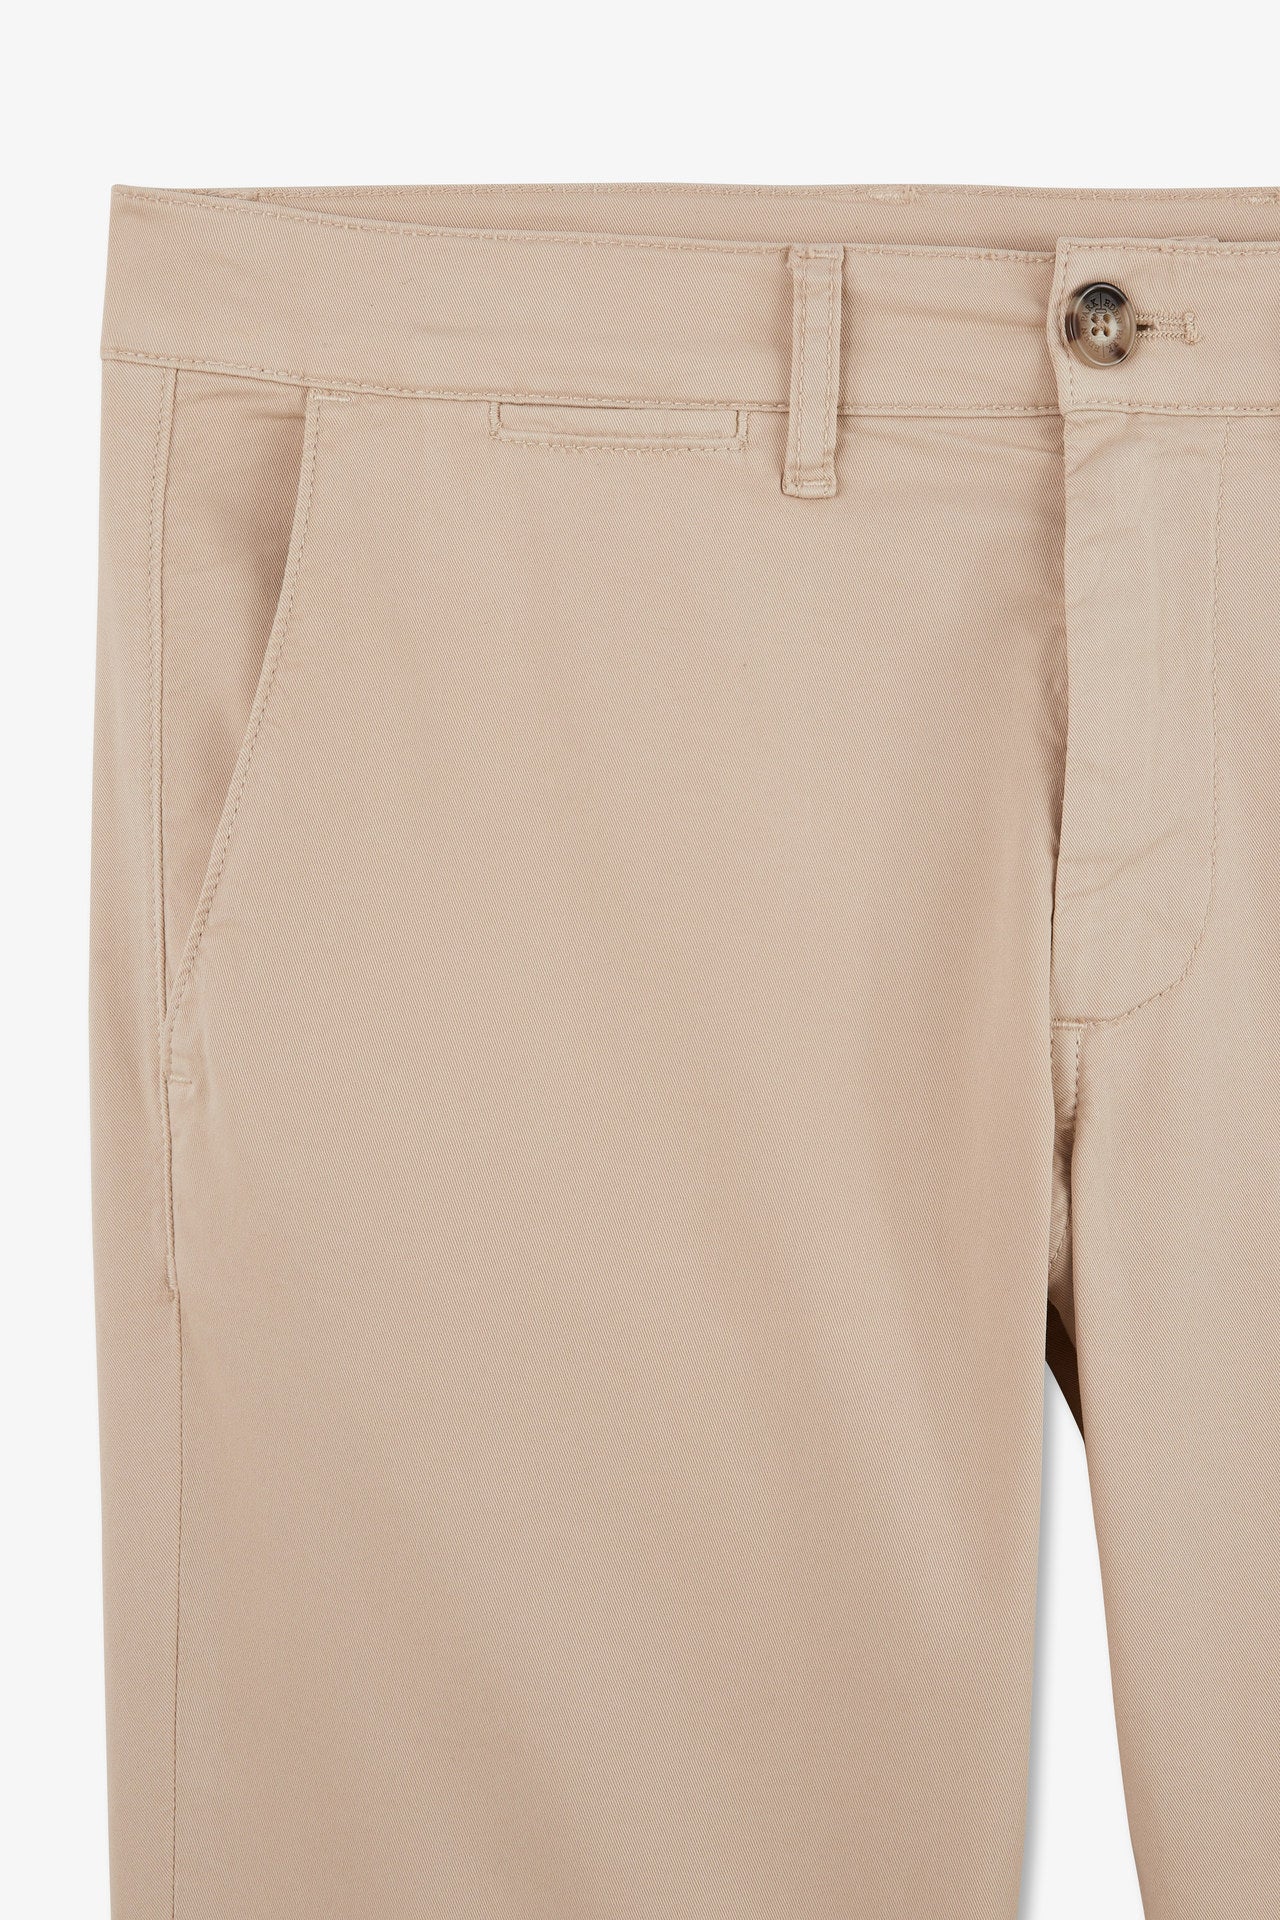 Pantalon chino beige - Image 6